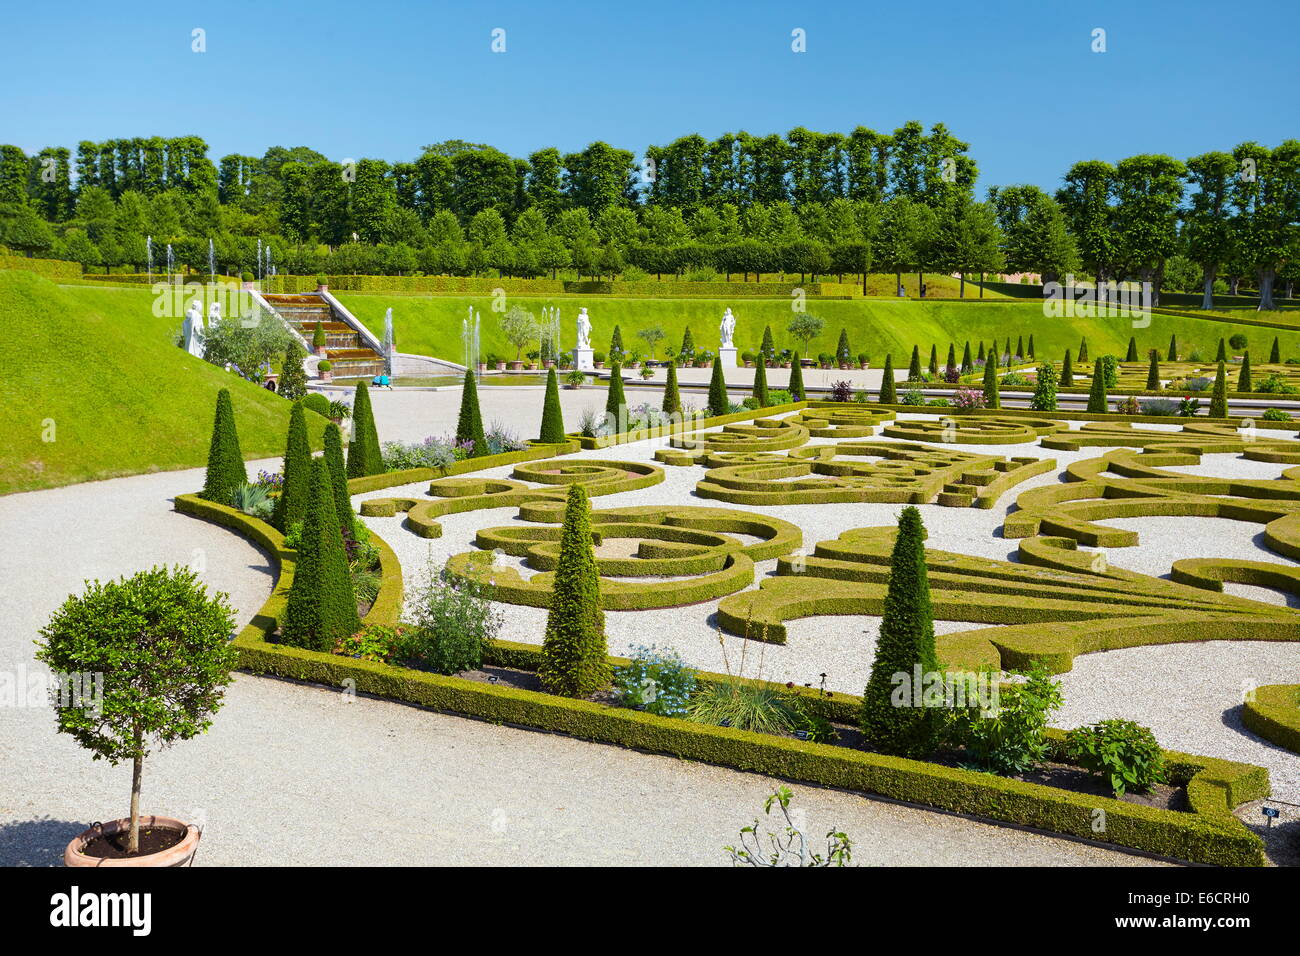 The baroque garden at Frederiksborg Castle, Denmark Stock Photo